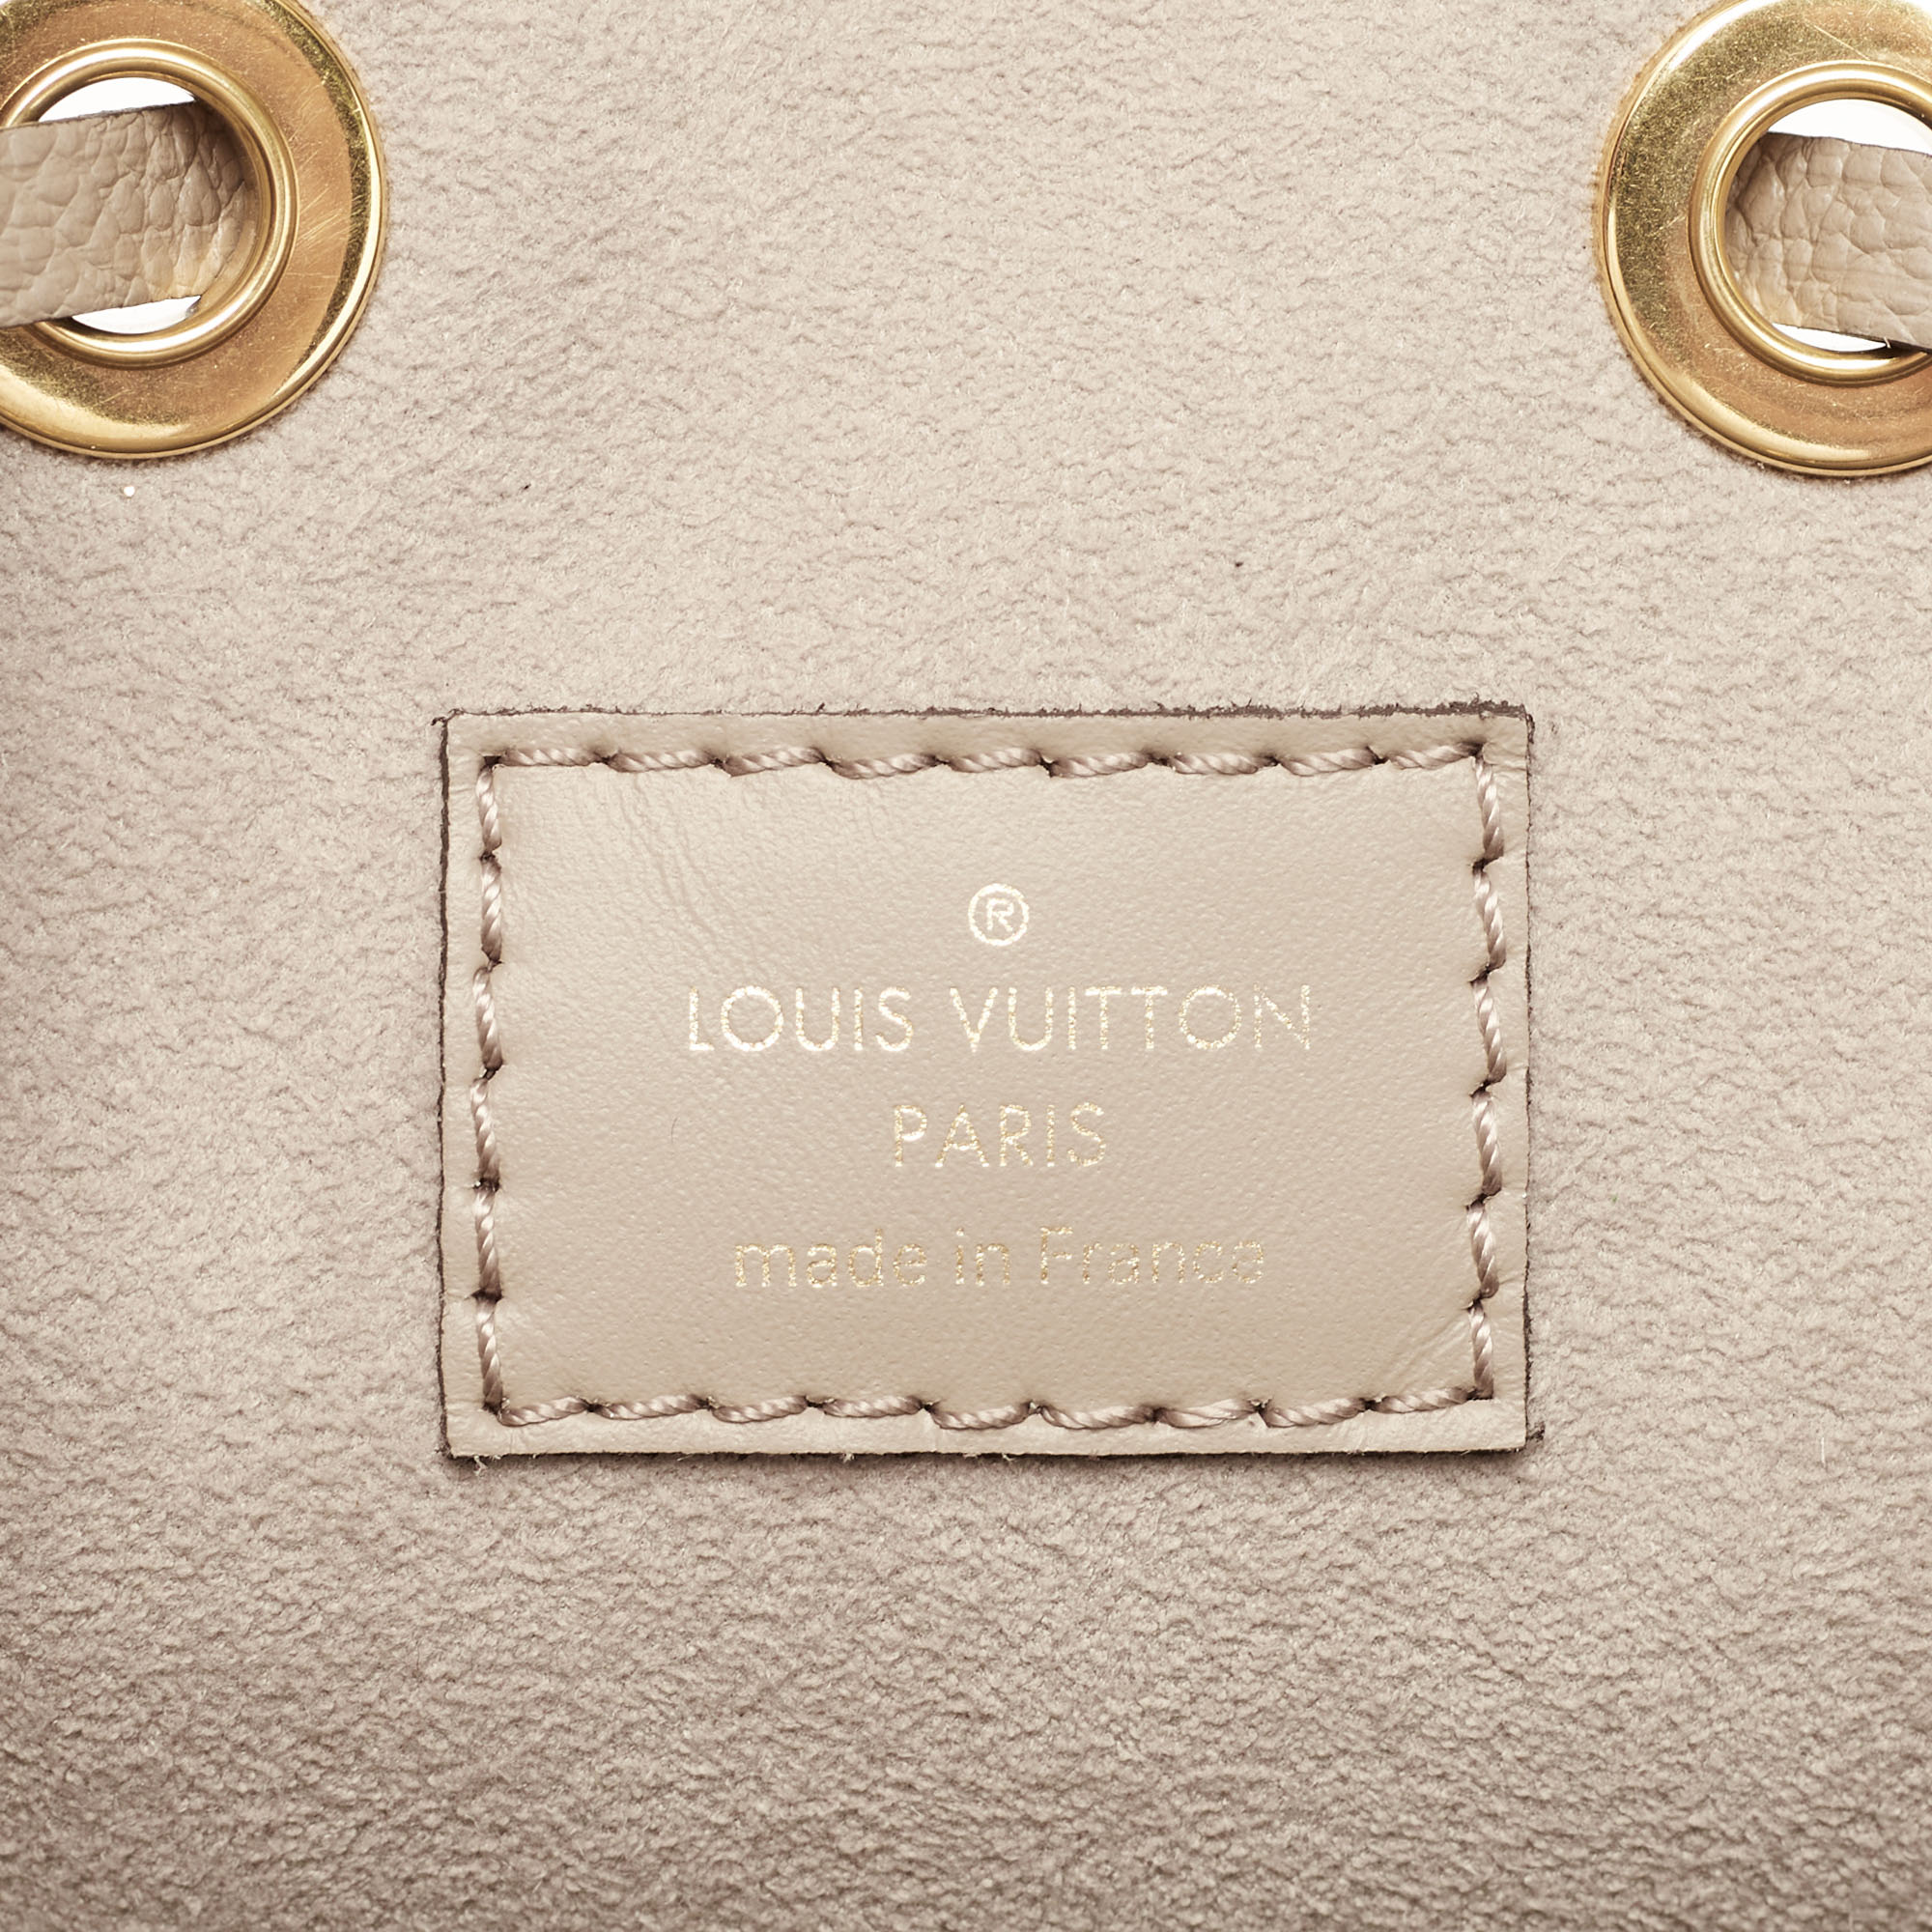 Shop Louis Vuitton NEONOE Néonoé Mm (M45306) by Ravie